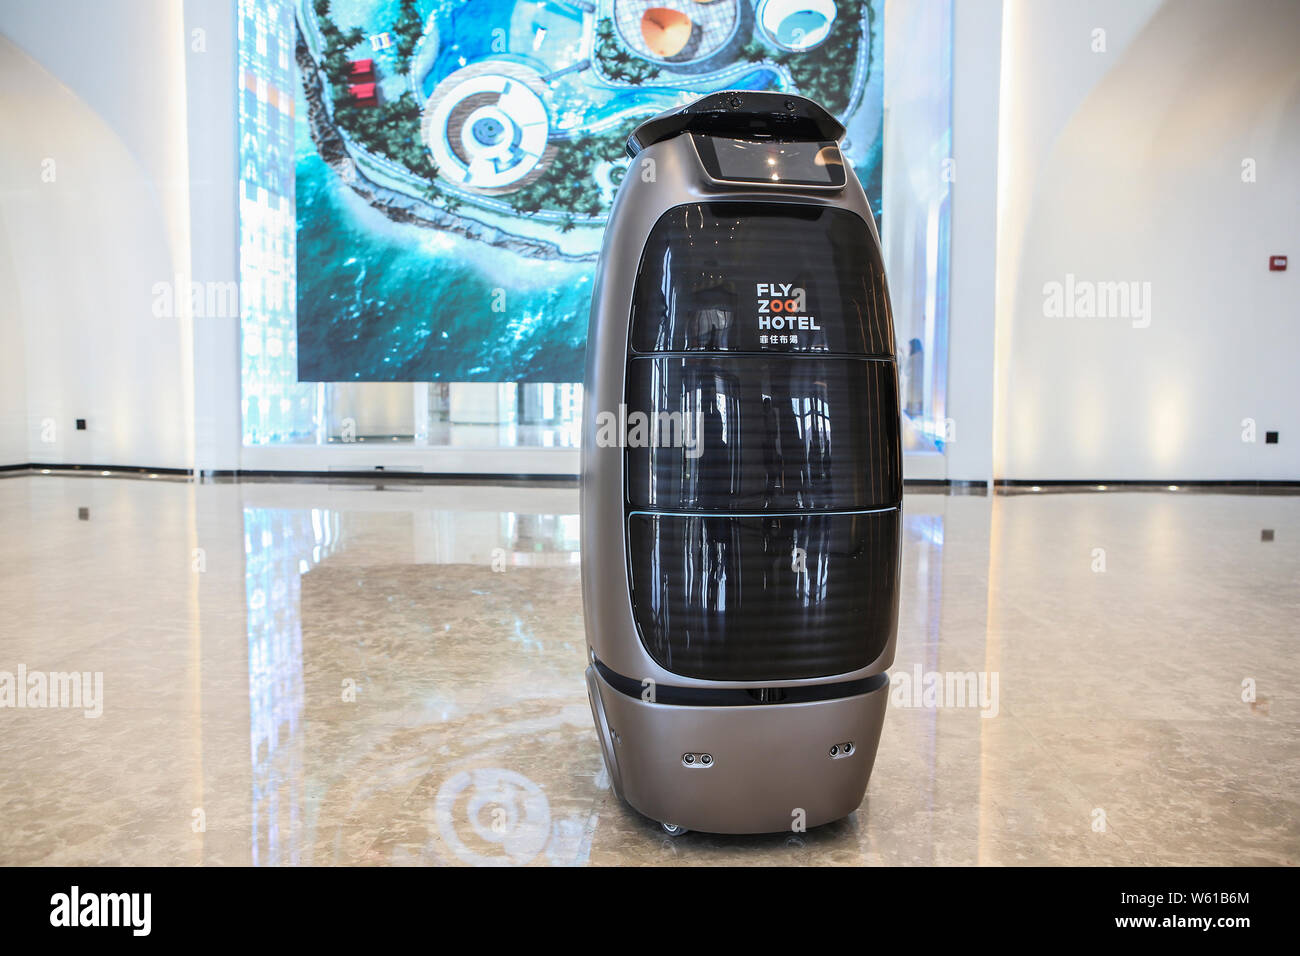 Un robot intelligent sert à l'avenir d'Alibaba Hotel - Fly Zoo d'e-commerce  chinois Alibaba Group géant à Hangzhou, ville de la Chine est Zheji Photo  Stock - Alamy